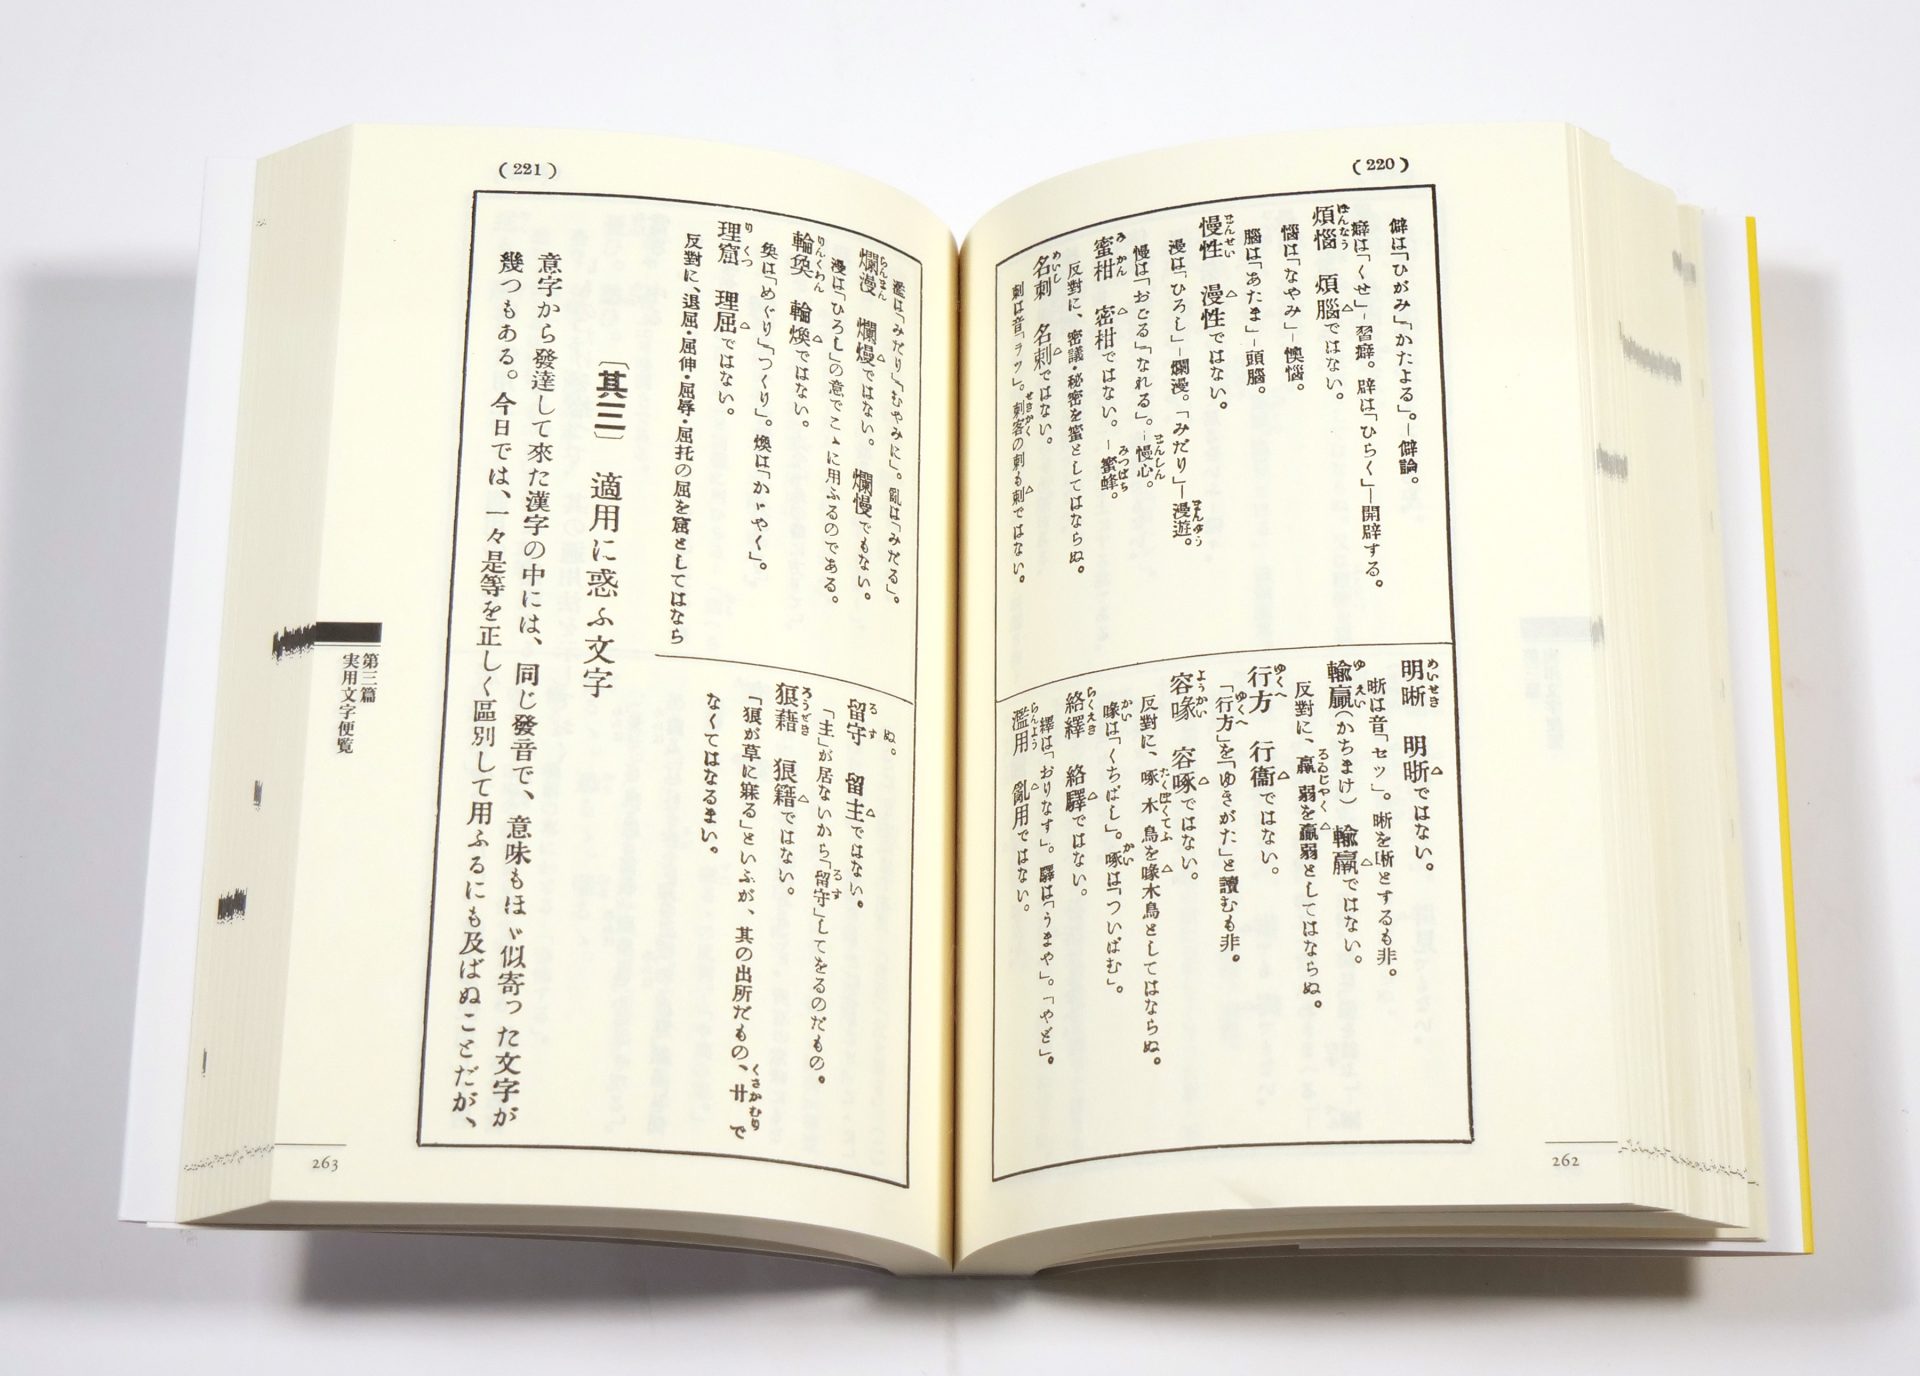 や、此れは便利だ（った）-大正三年当時の世情がうかがえる実用語集 - 東京印書館 | 写真集・展覧会図録・絵本・その他印刷物の企画制作| TOKYO  INSHOKAN PRINTING CO.